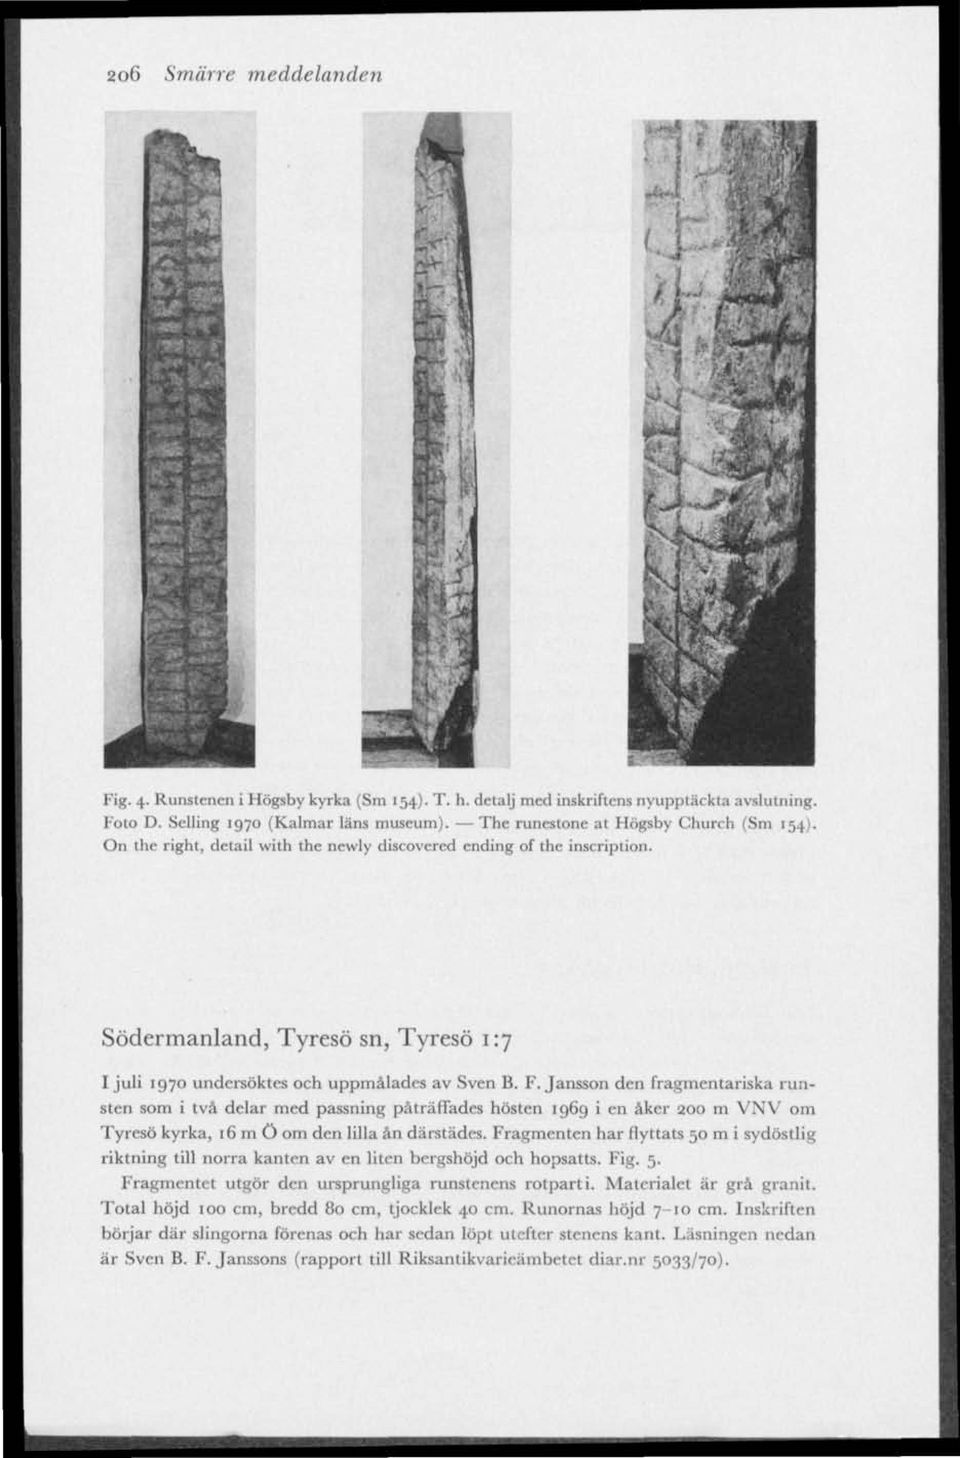 F.Jansson den fragmentariska runsten som i två delar med passning påträffades hösten 1969 i en åker 200 m VNV om Tyresö kyrka, 16111Ö om den lilla ån därstädes.